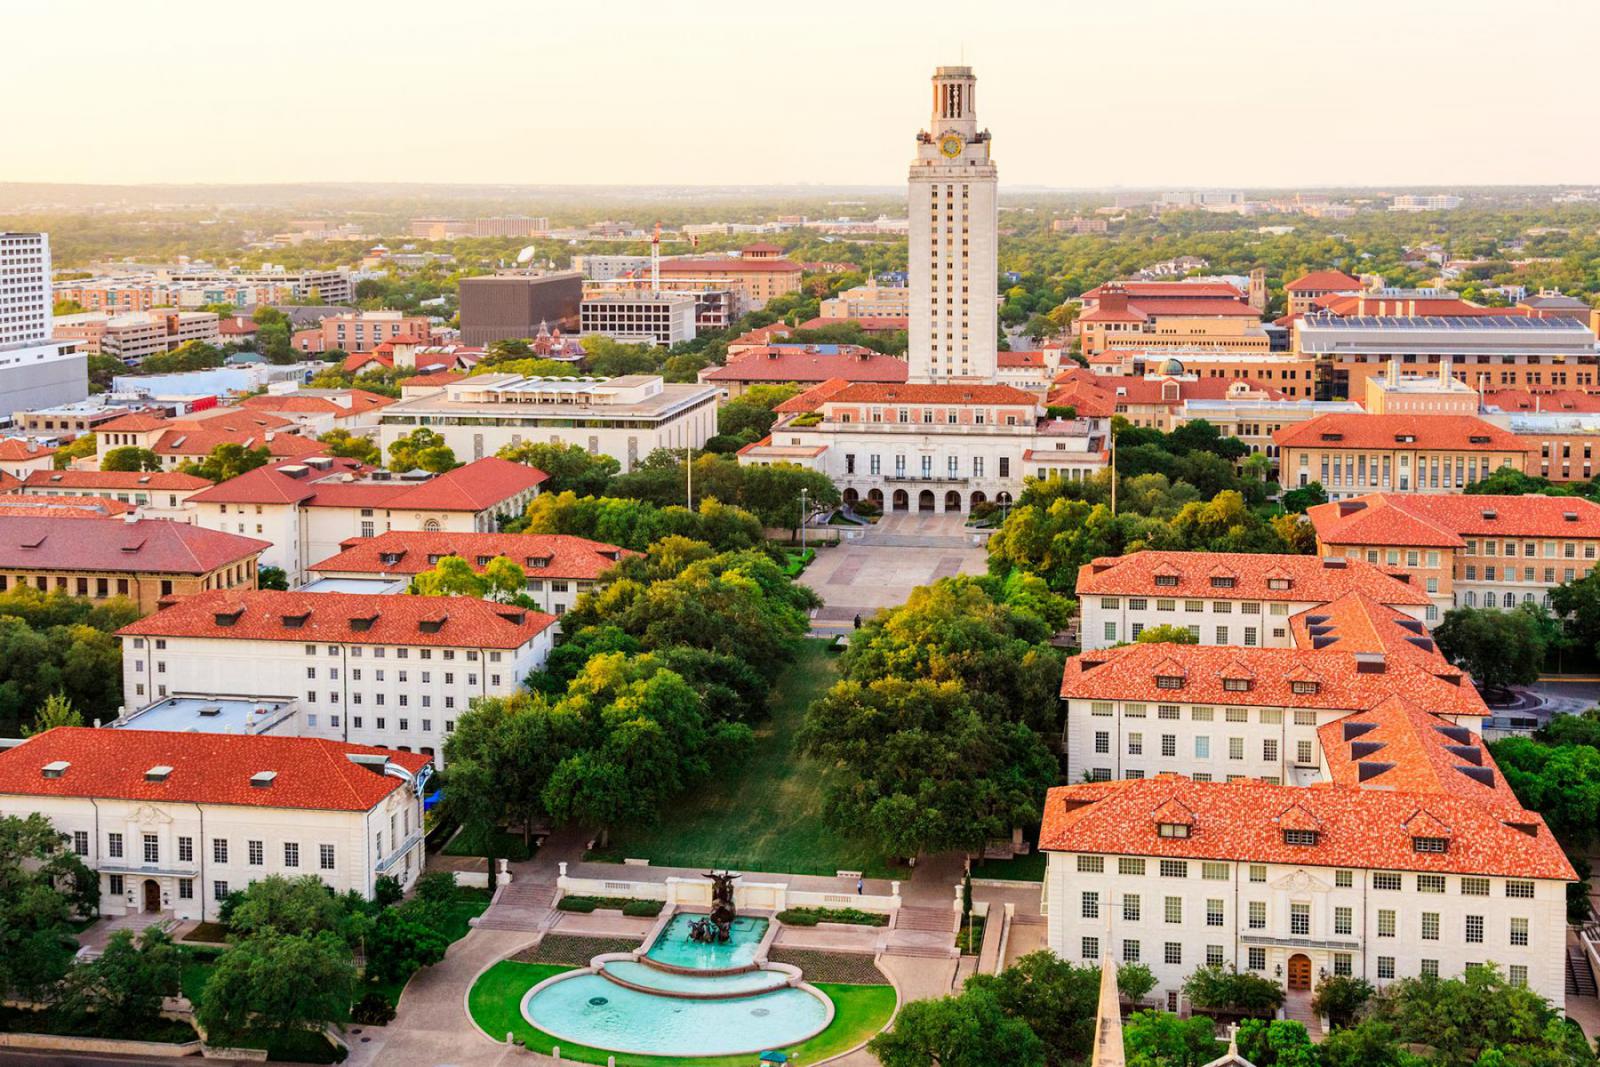 De campus van de University of Texas in Austin | iStock - dszc